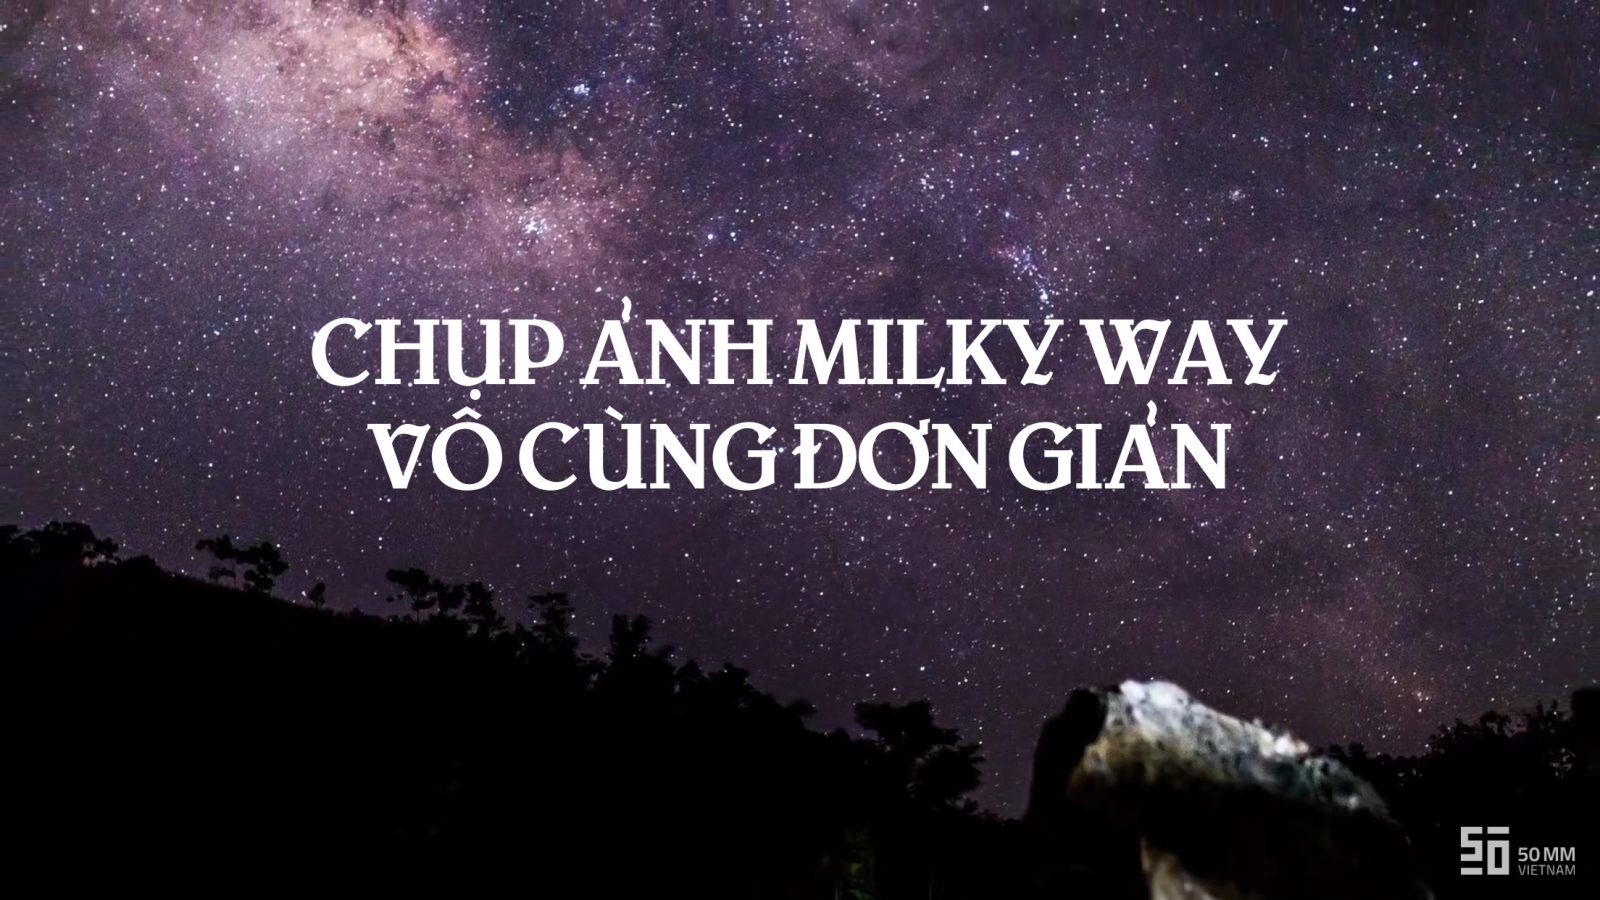 [Video] Hướng dẫn chụp ảnh Milky Way | 50mm Vietnam